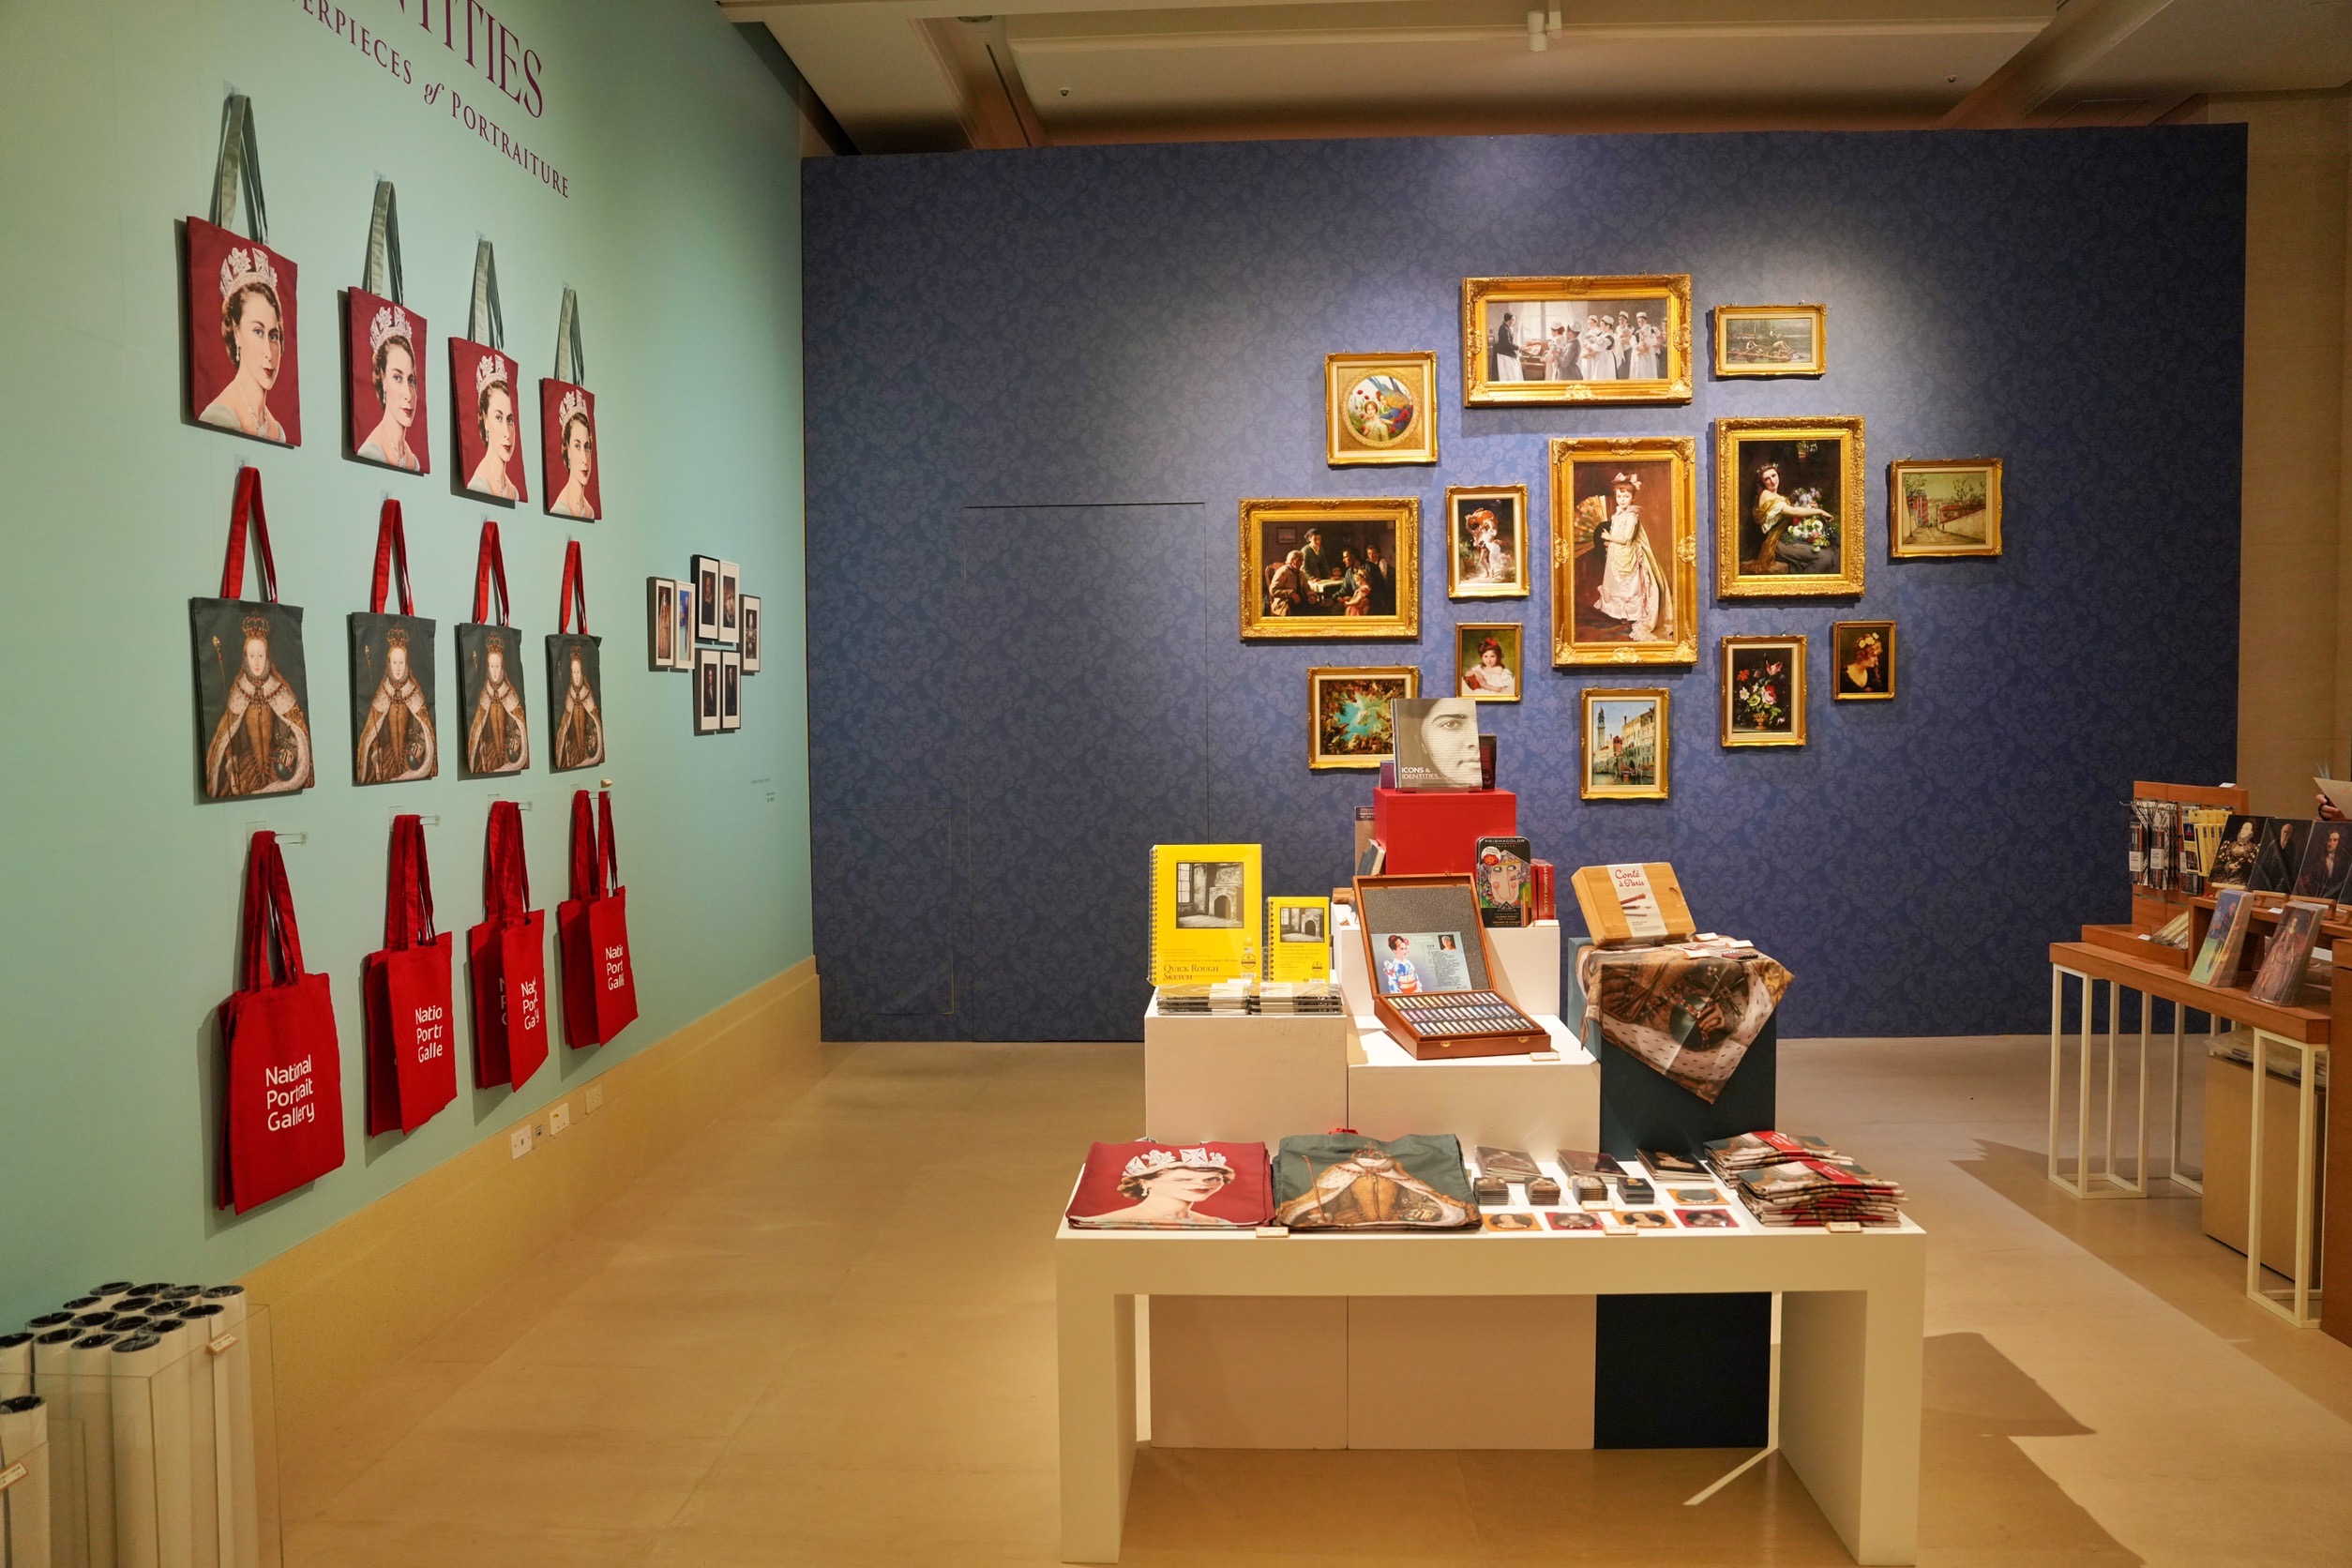 奇美博物館 時代的臉孔:從莎士比亞到紅髮艾德